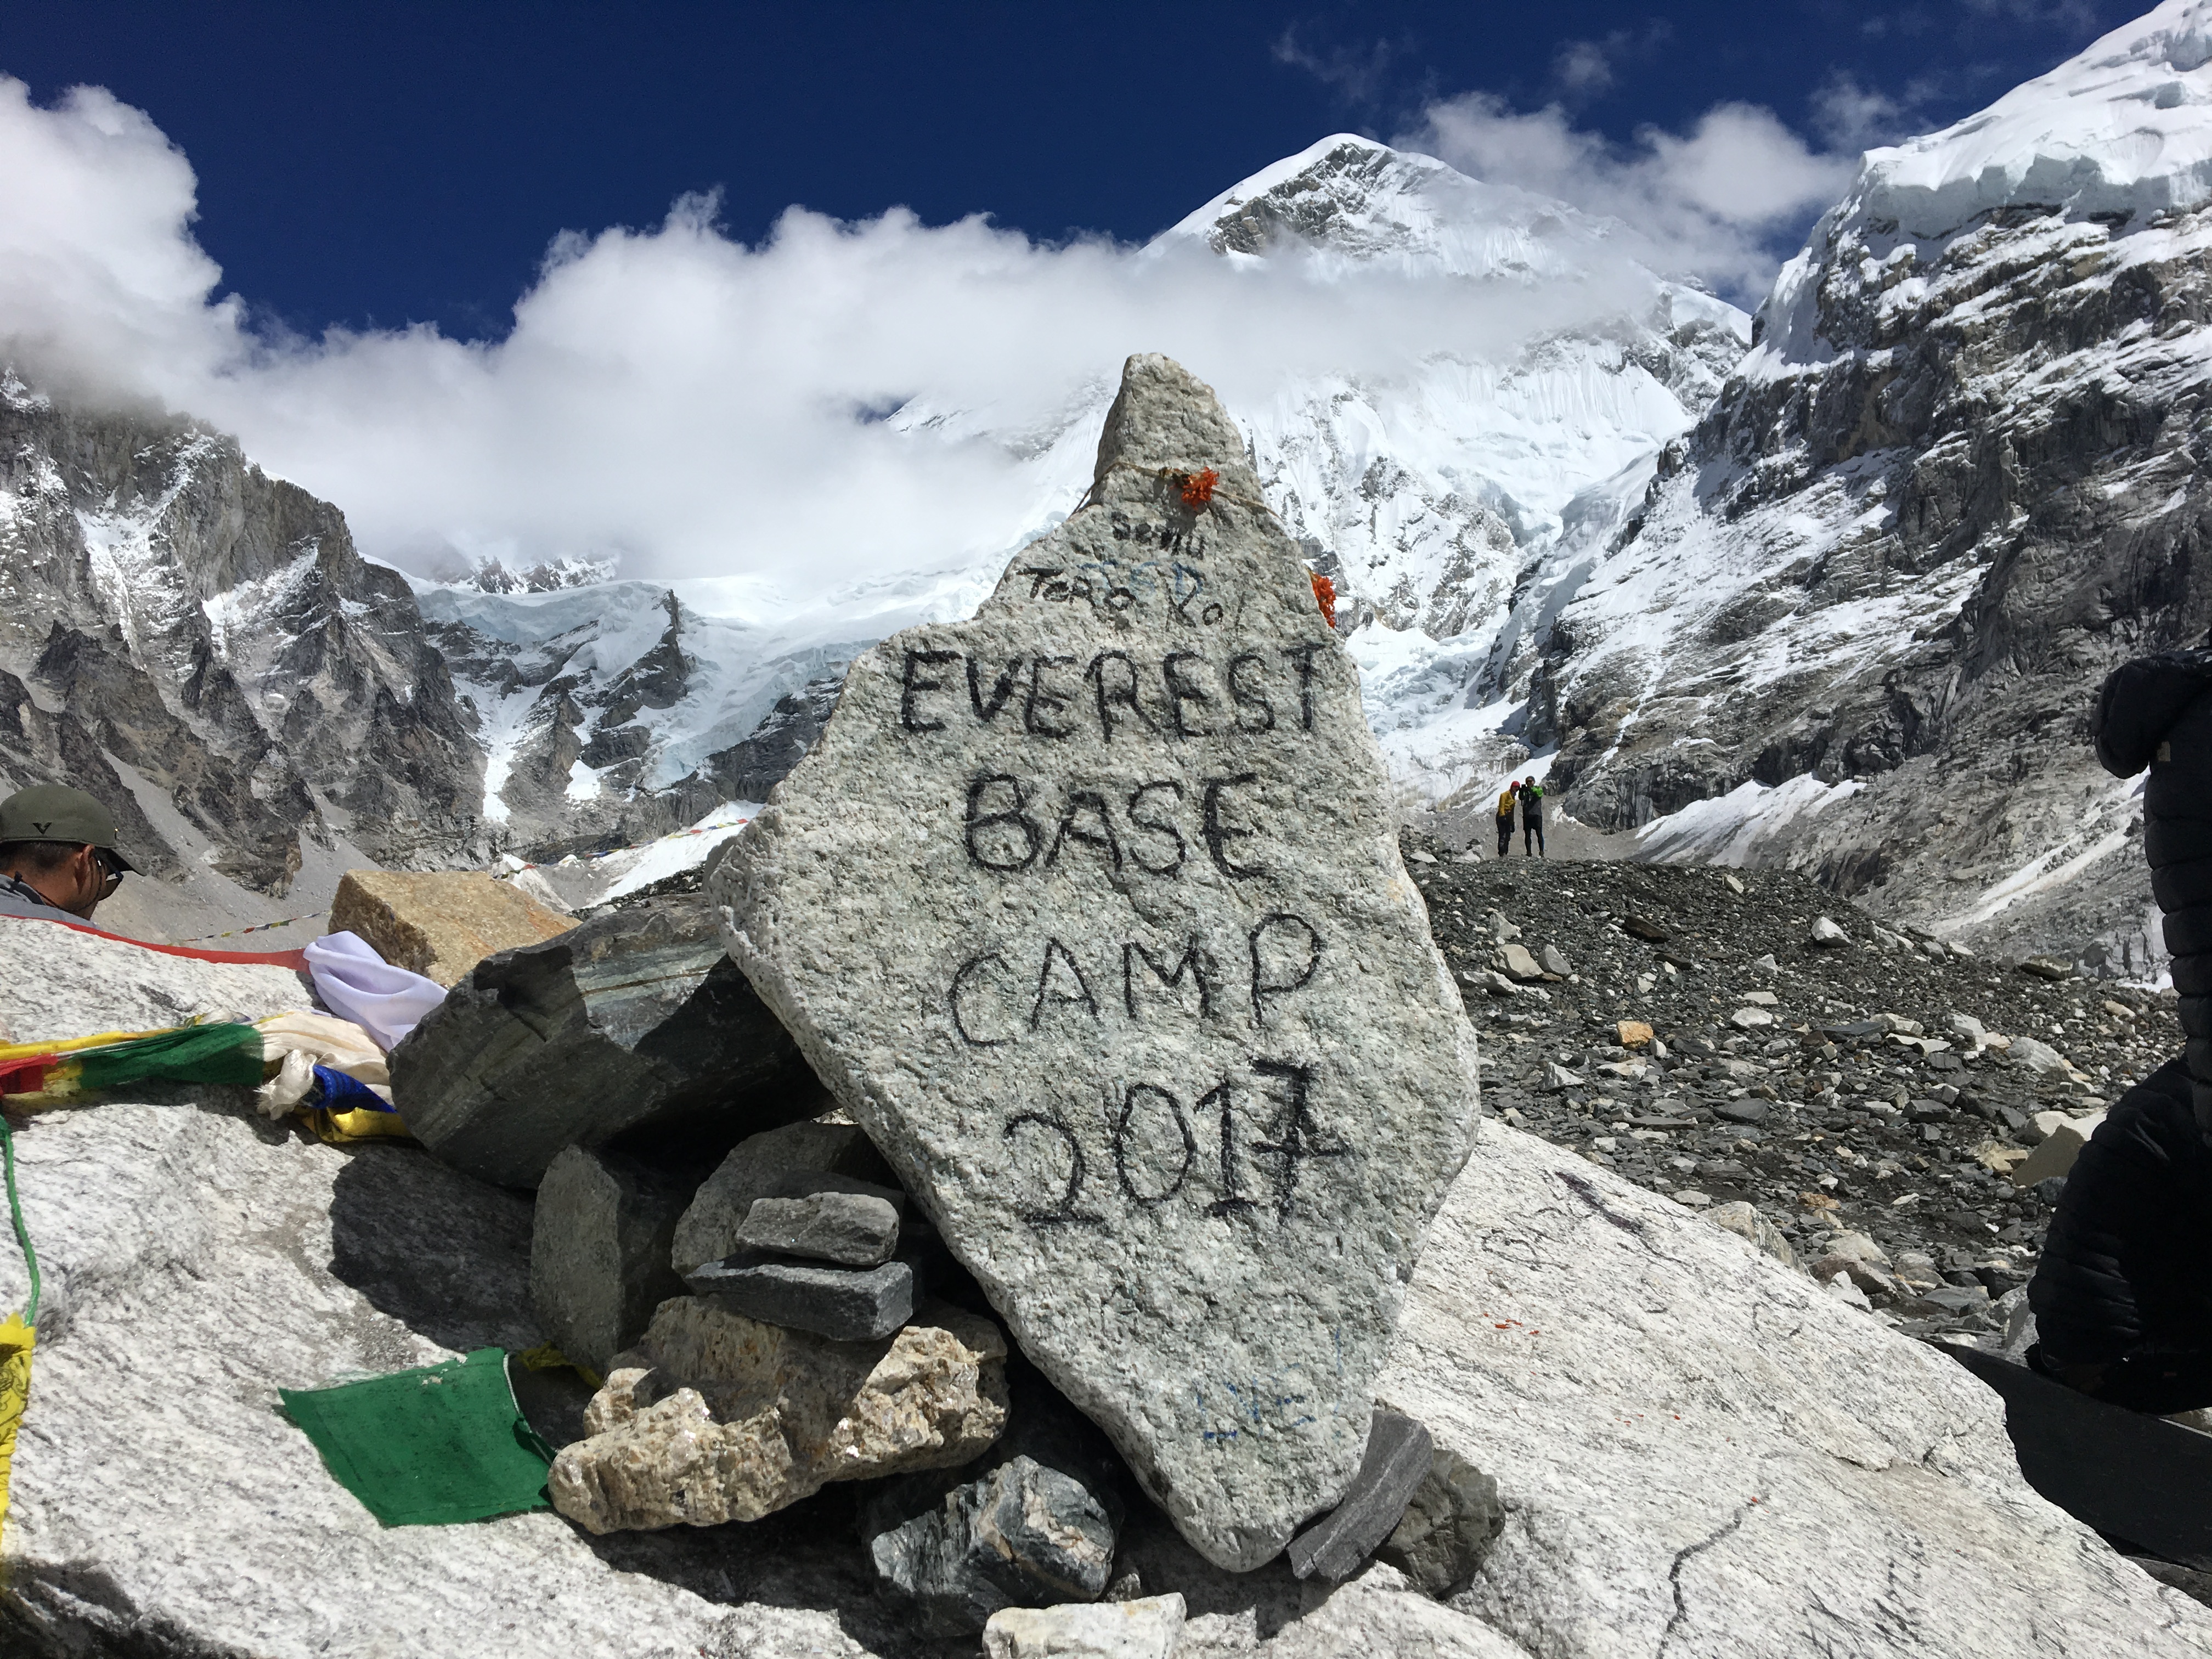 Everest Base Camp!